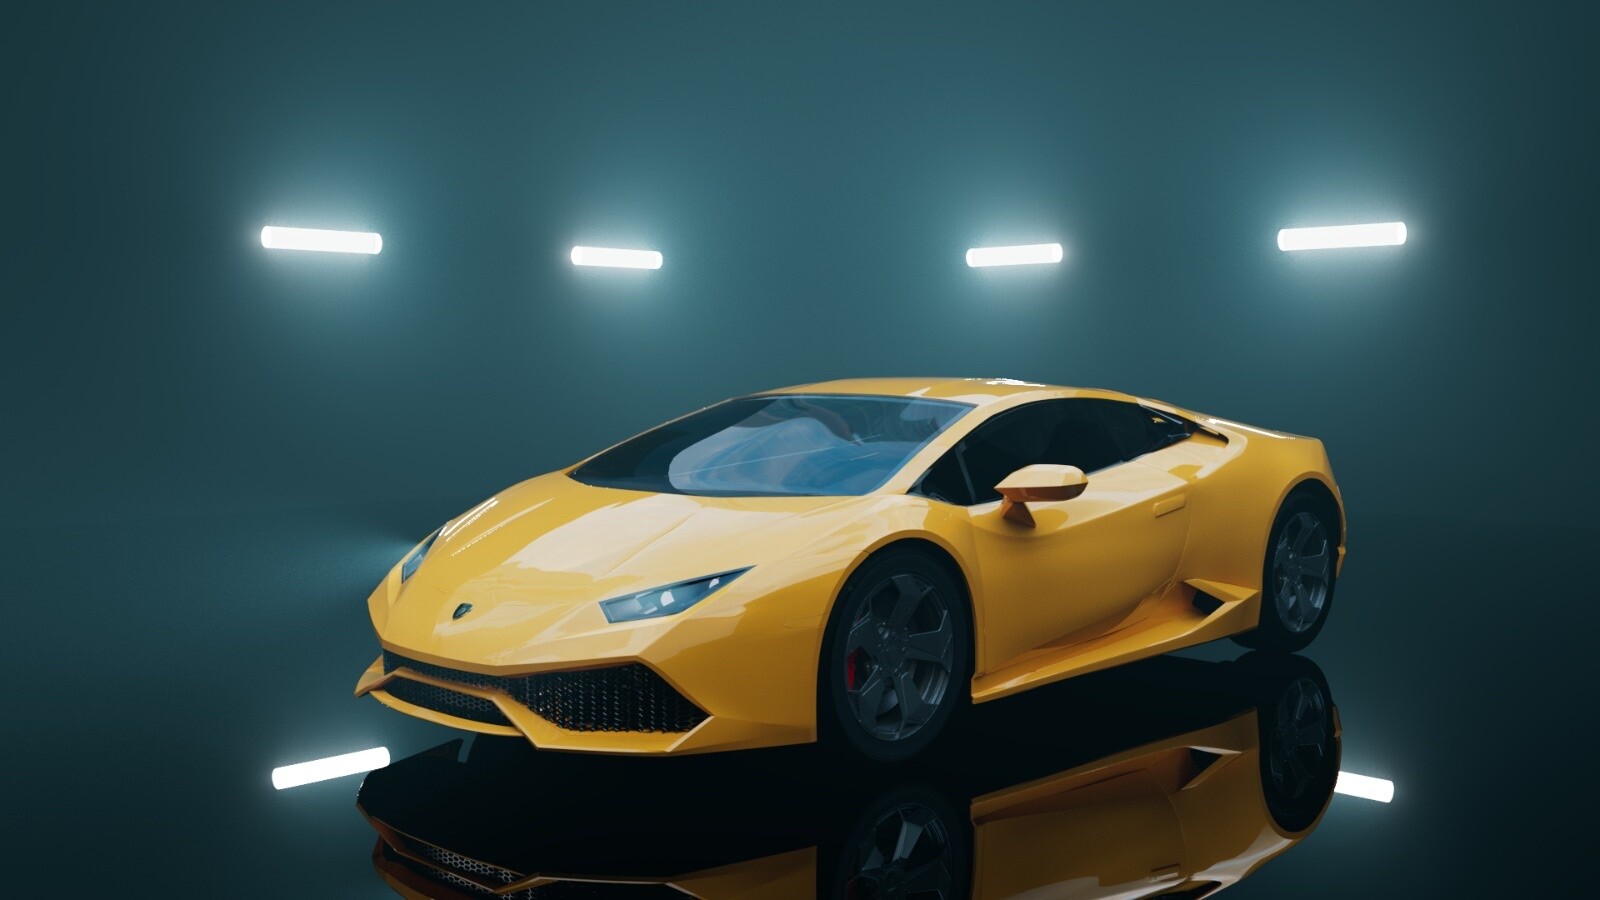 Hãy khám phá Lâu đài nghệ thuật - một siêu phẩm xe thể thao của Lamborghini Huracan. Chiếc siêu xe này được thiết kế tinh tế và đầy cảm hứng như một tác phẩm nghệ thuật chân thực. Tận hưởng niềm đam mê lái xe và sự sang trọng vượt trội của Lamborghini Huracan bằng cách xem hình ảnh liên quan.